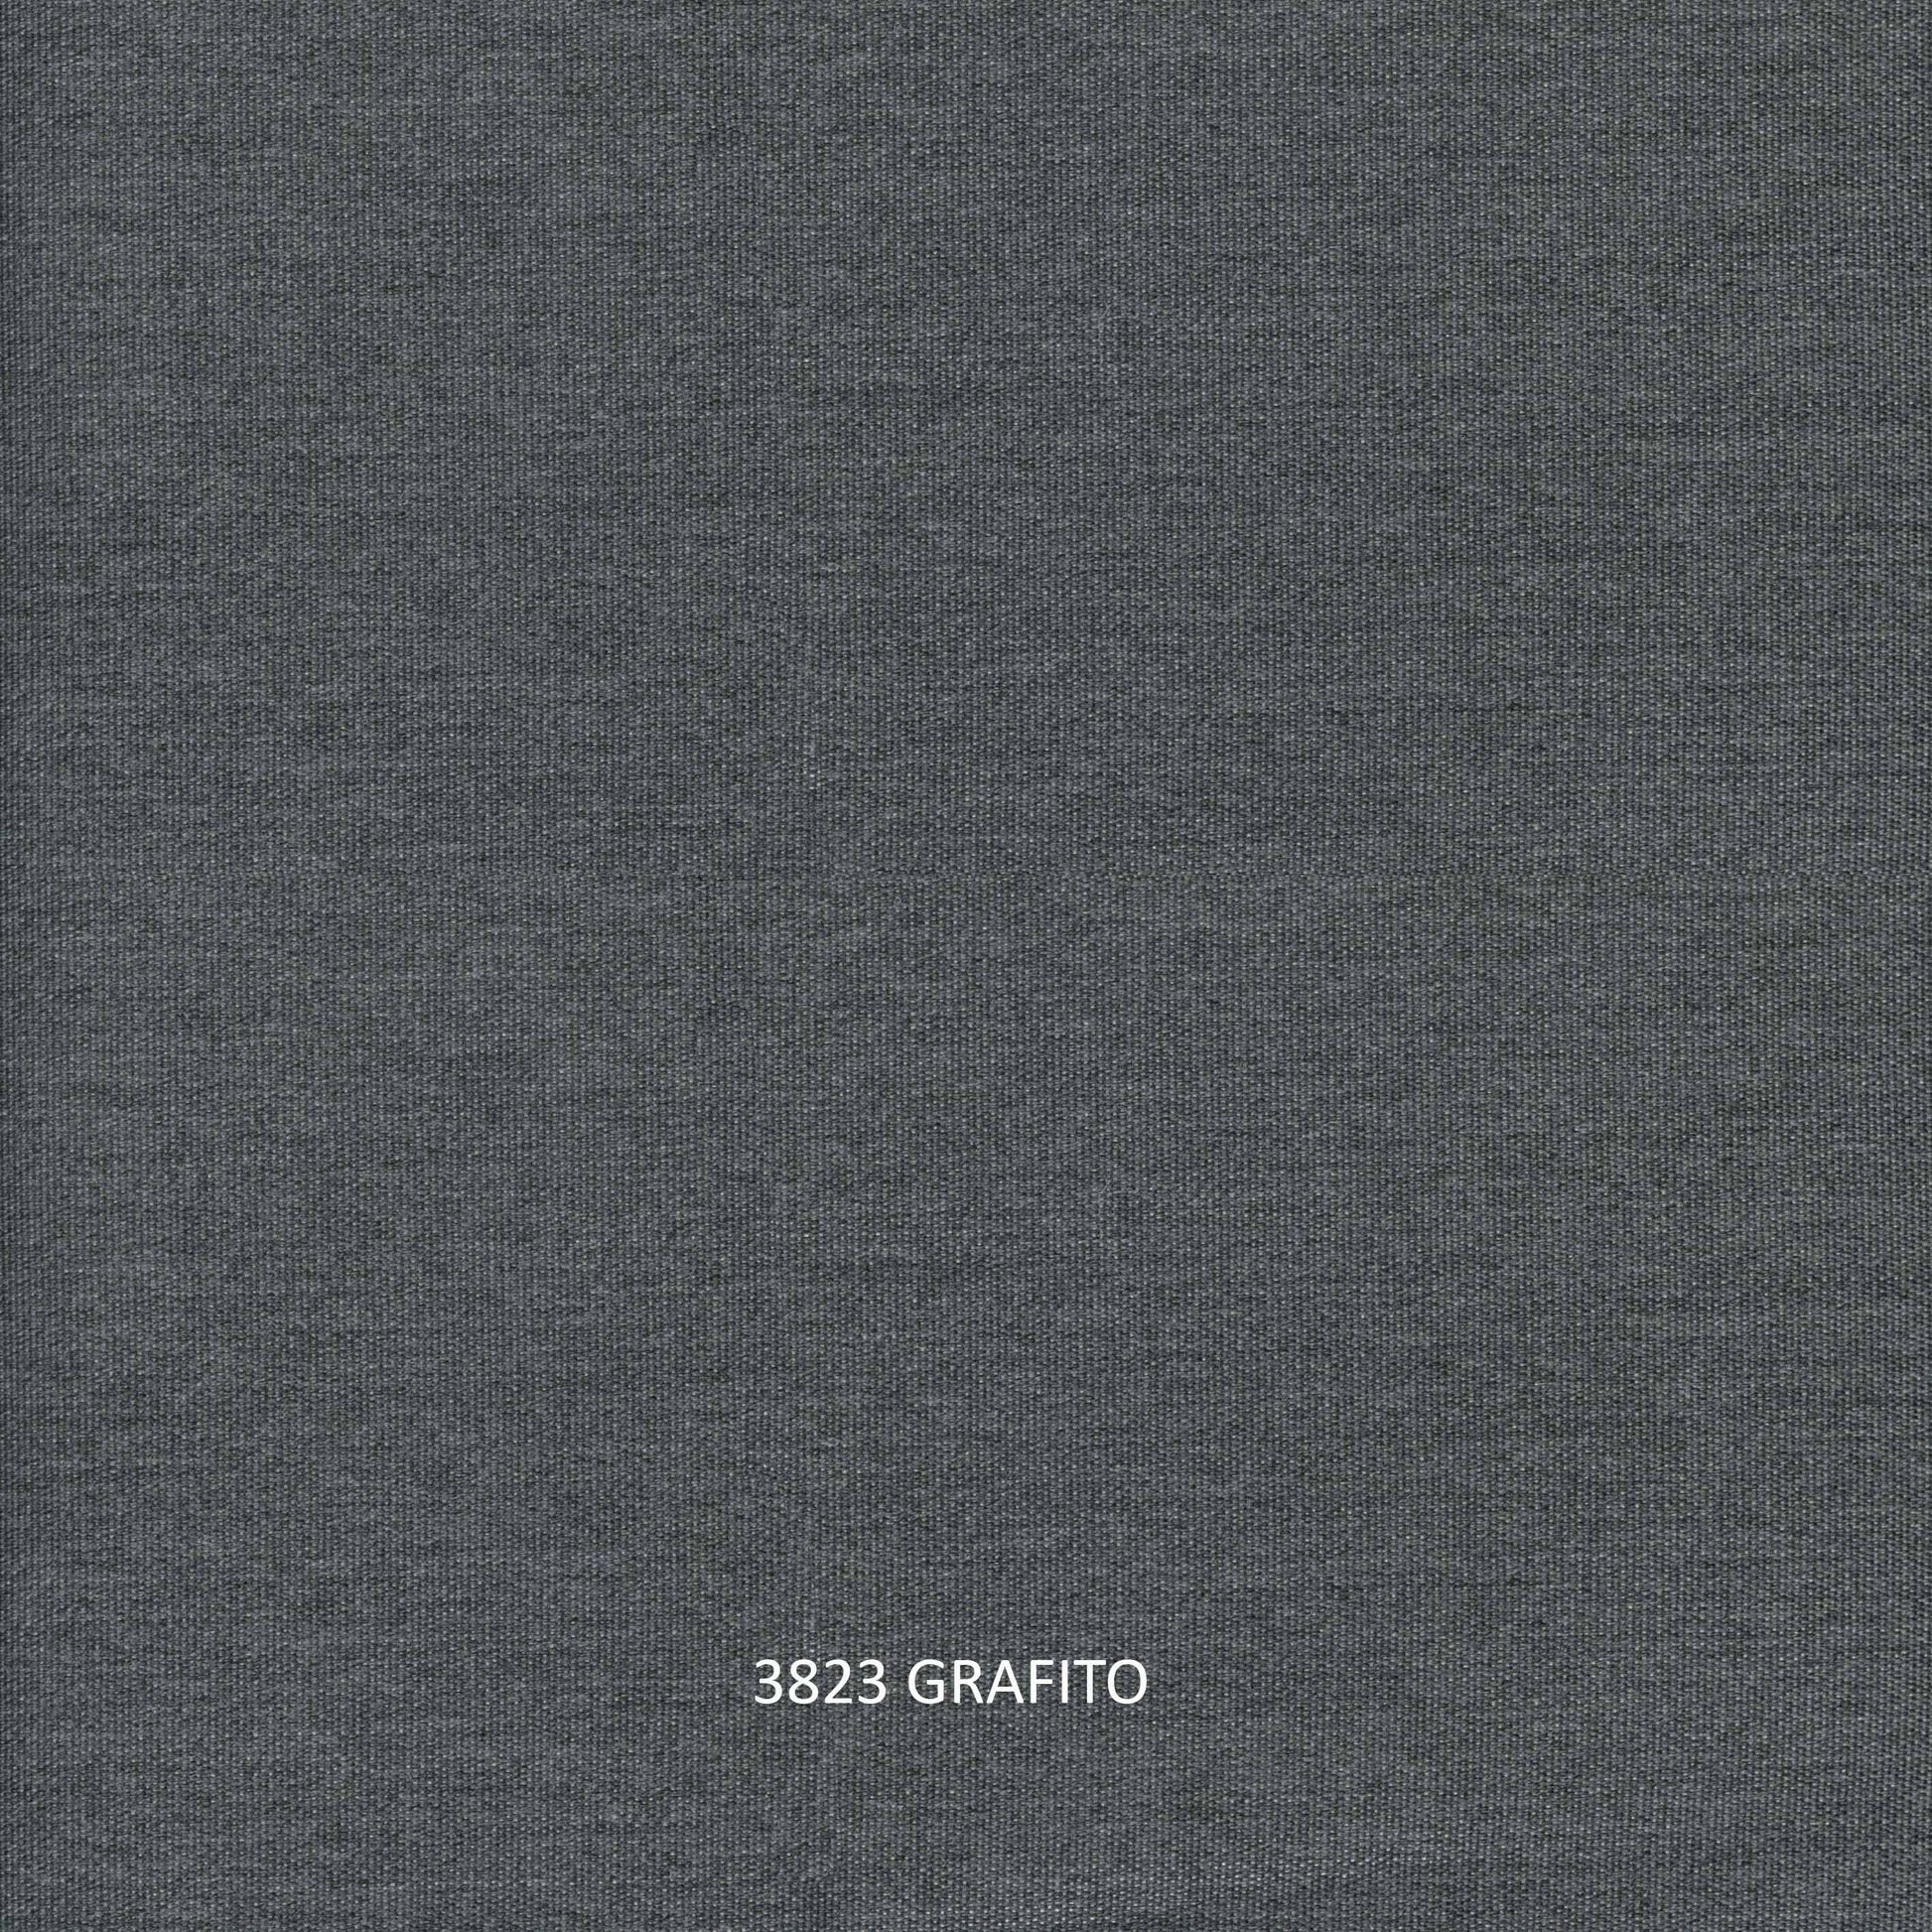 Strips Silver Walnut Sofa - PadioLiving - Strips Silver Walnut Sofa - Outdoor Sofa - Silver Walnut 50mm Weave - Grafito (£2740) - PadioLiving